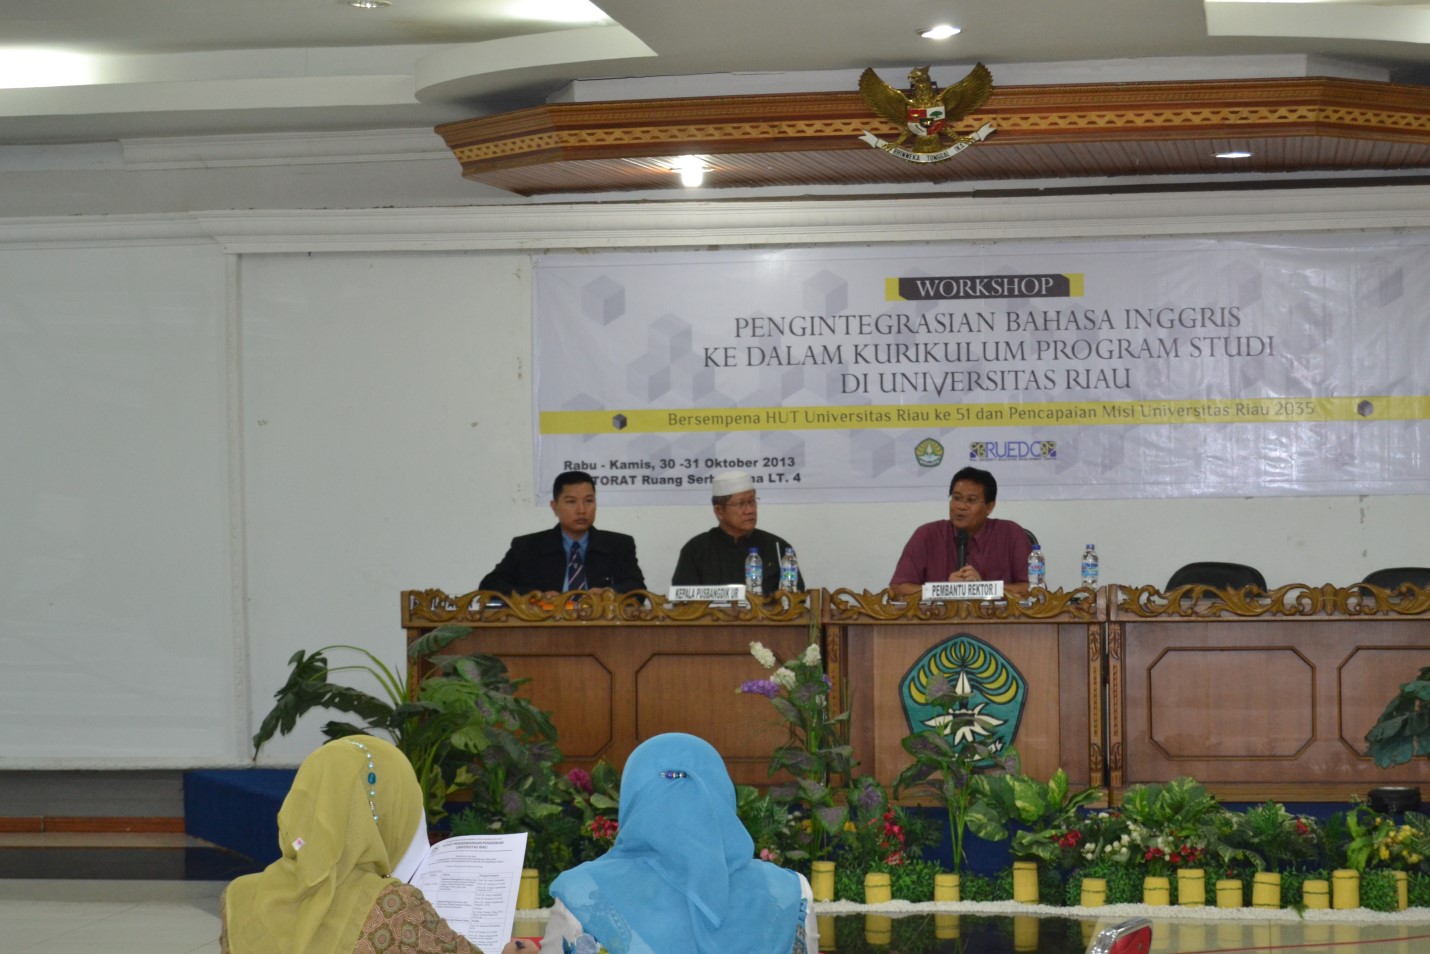 Pembukaan Workshop oleh PR I Prof. Dr. Ir. Aras Mulyadi, M.Sc  sekaligus pembacaan Makalah dari Rektor UR